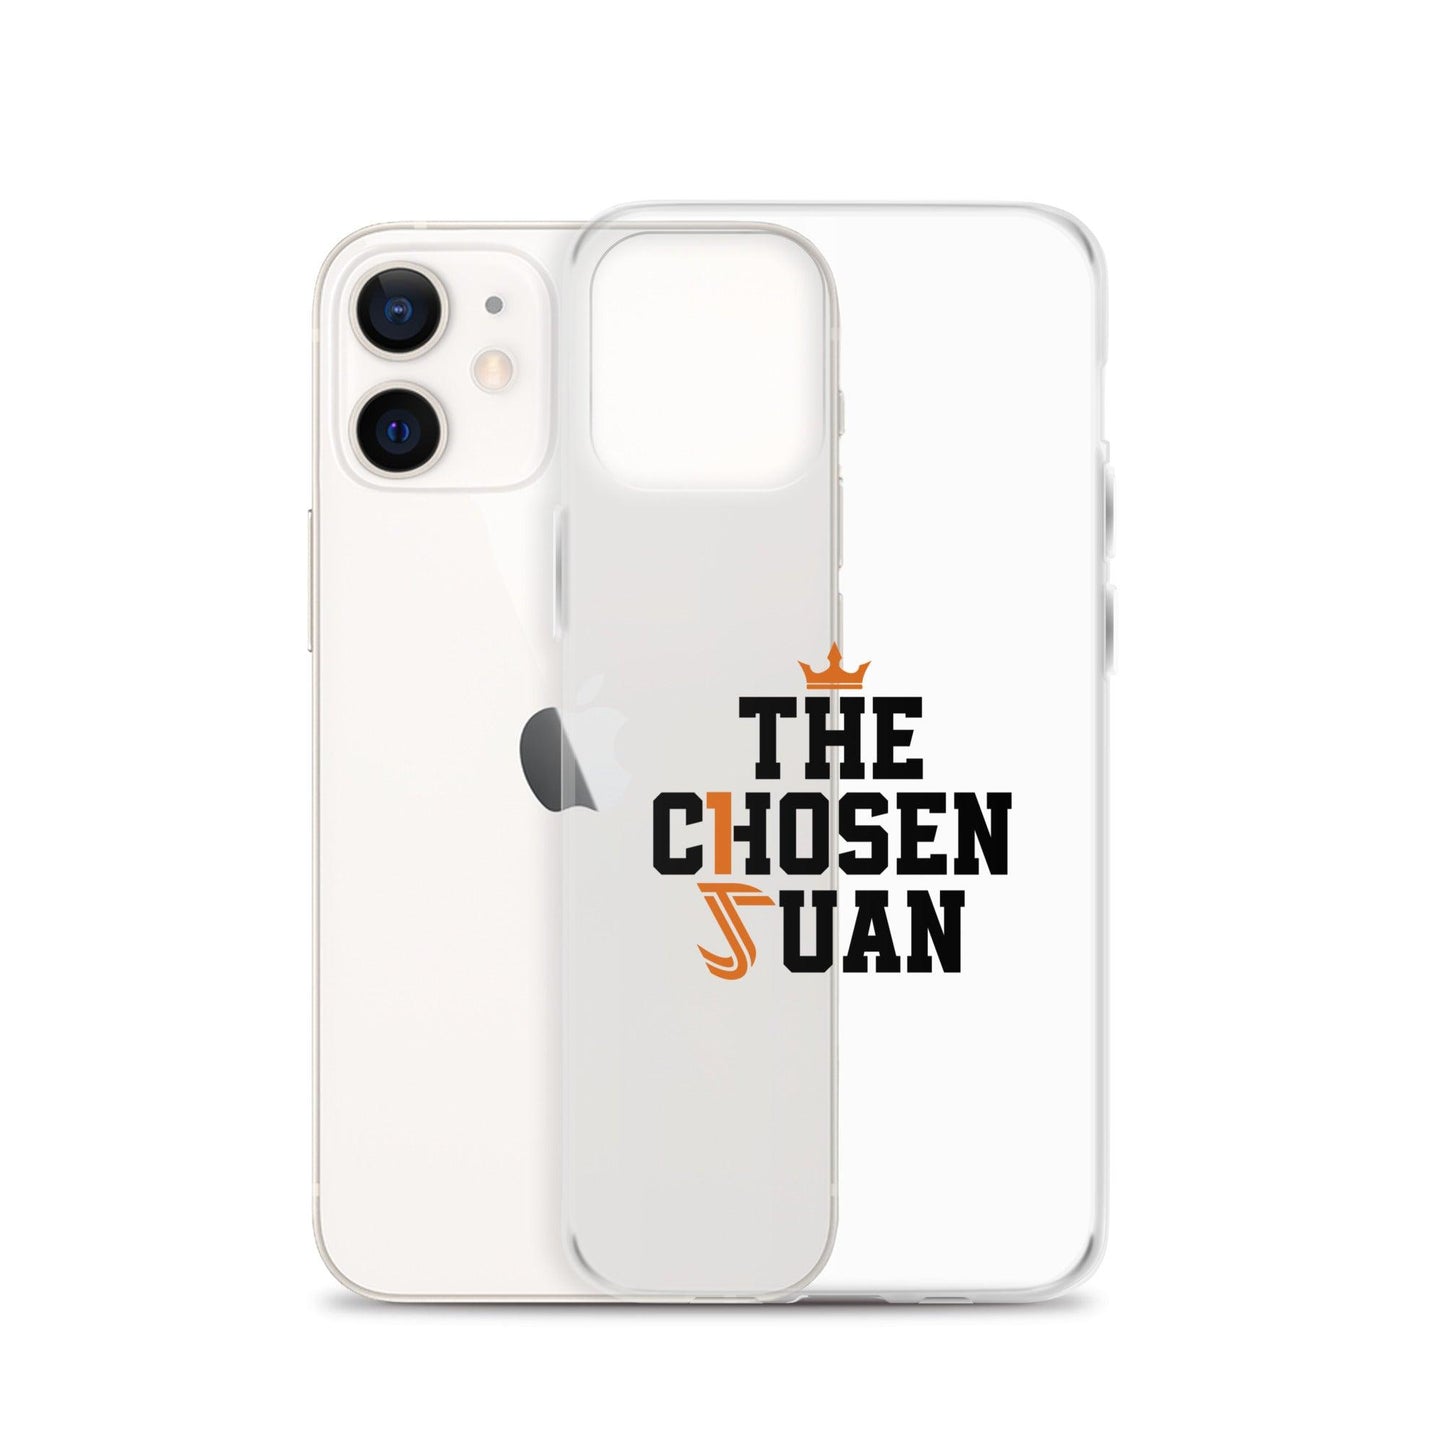 Juan Thornhill "Chosen Juan" iPhone® - Fan Arch